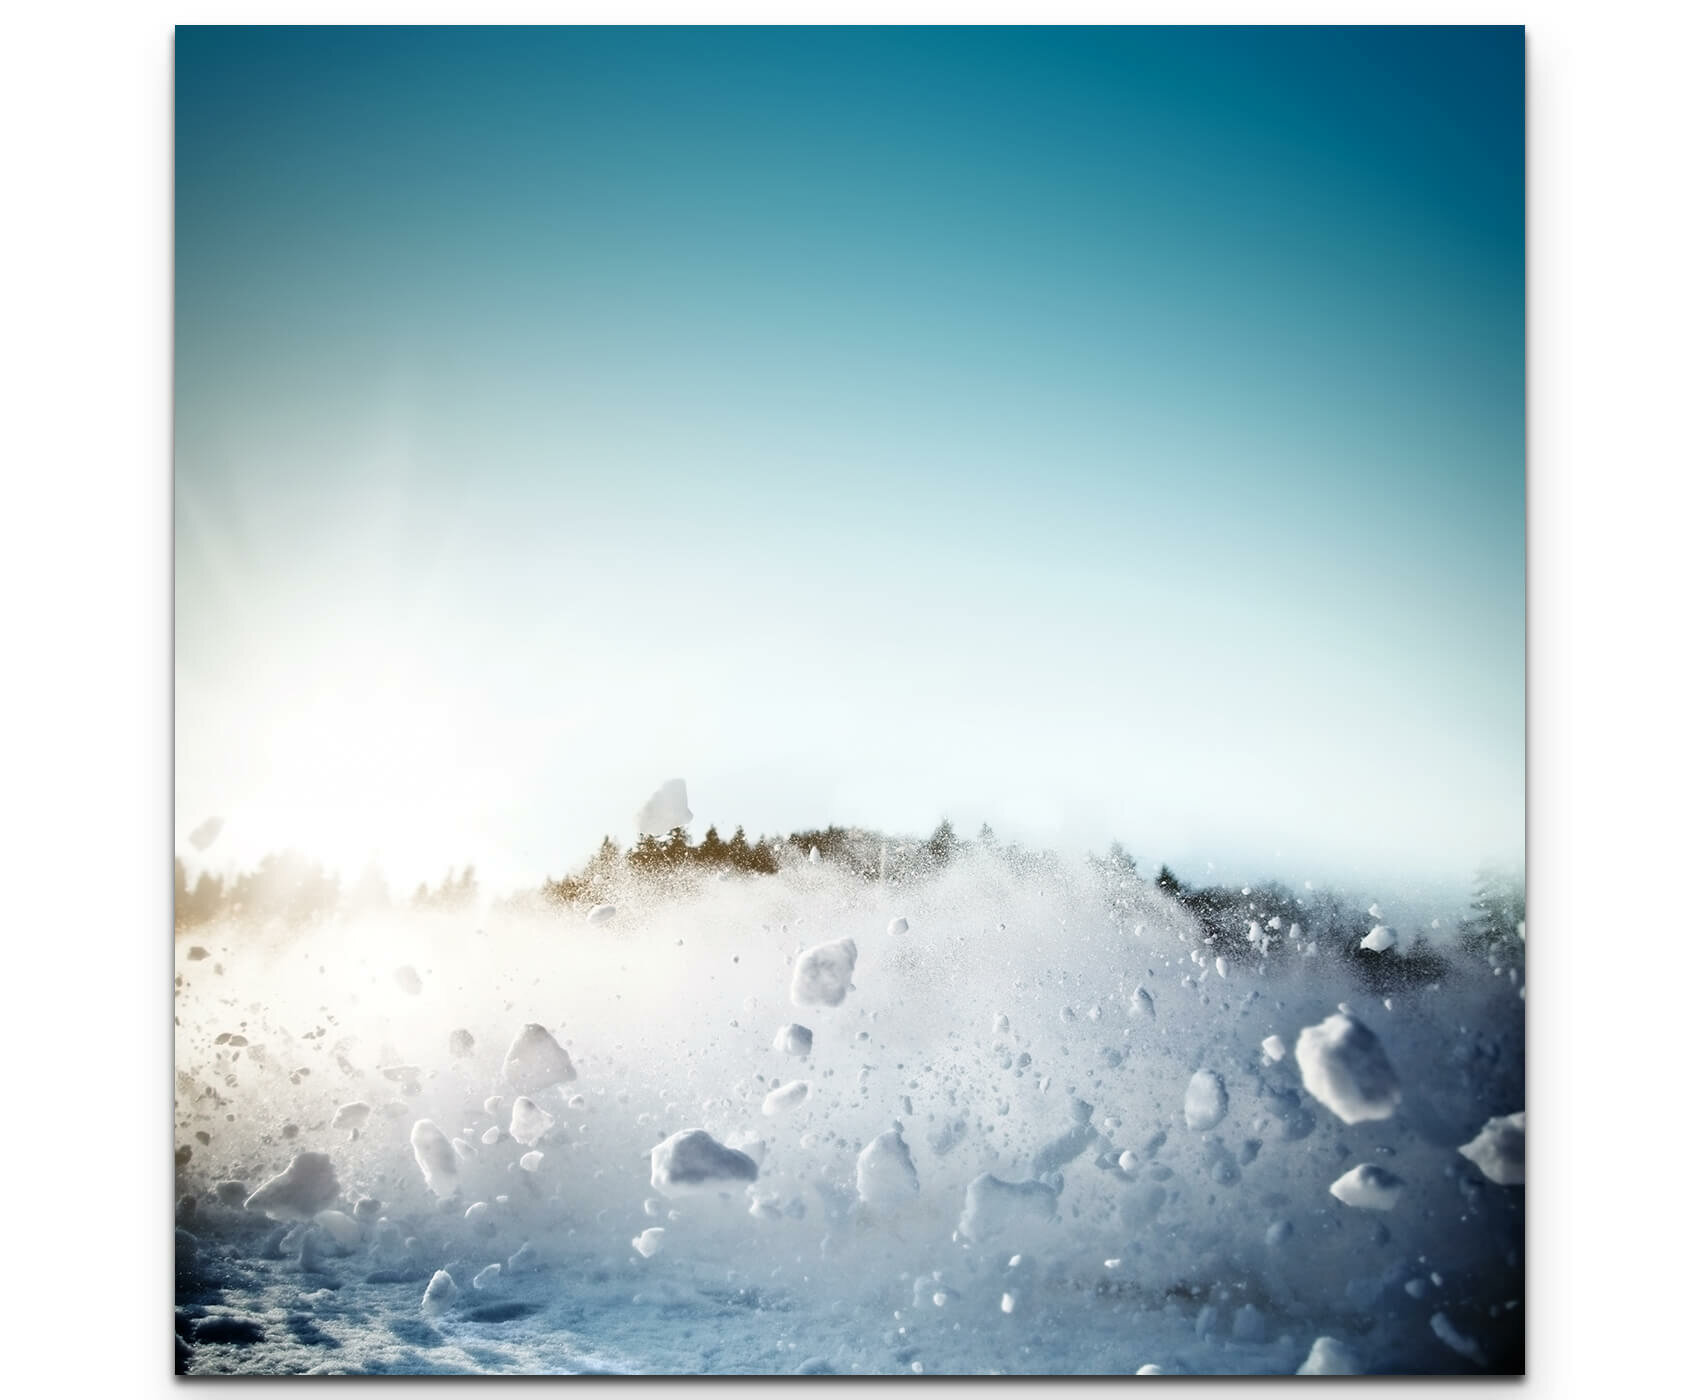 Mit Schnee bedeckter Besen auf einer … – Bild kaufen – 11226058 ❘  living4media